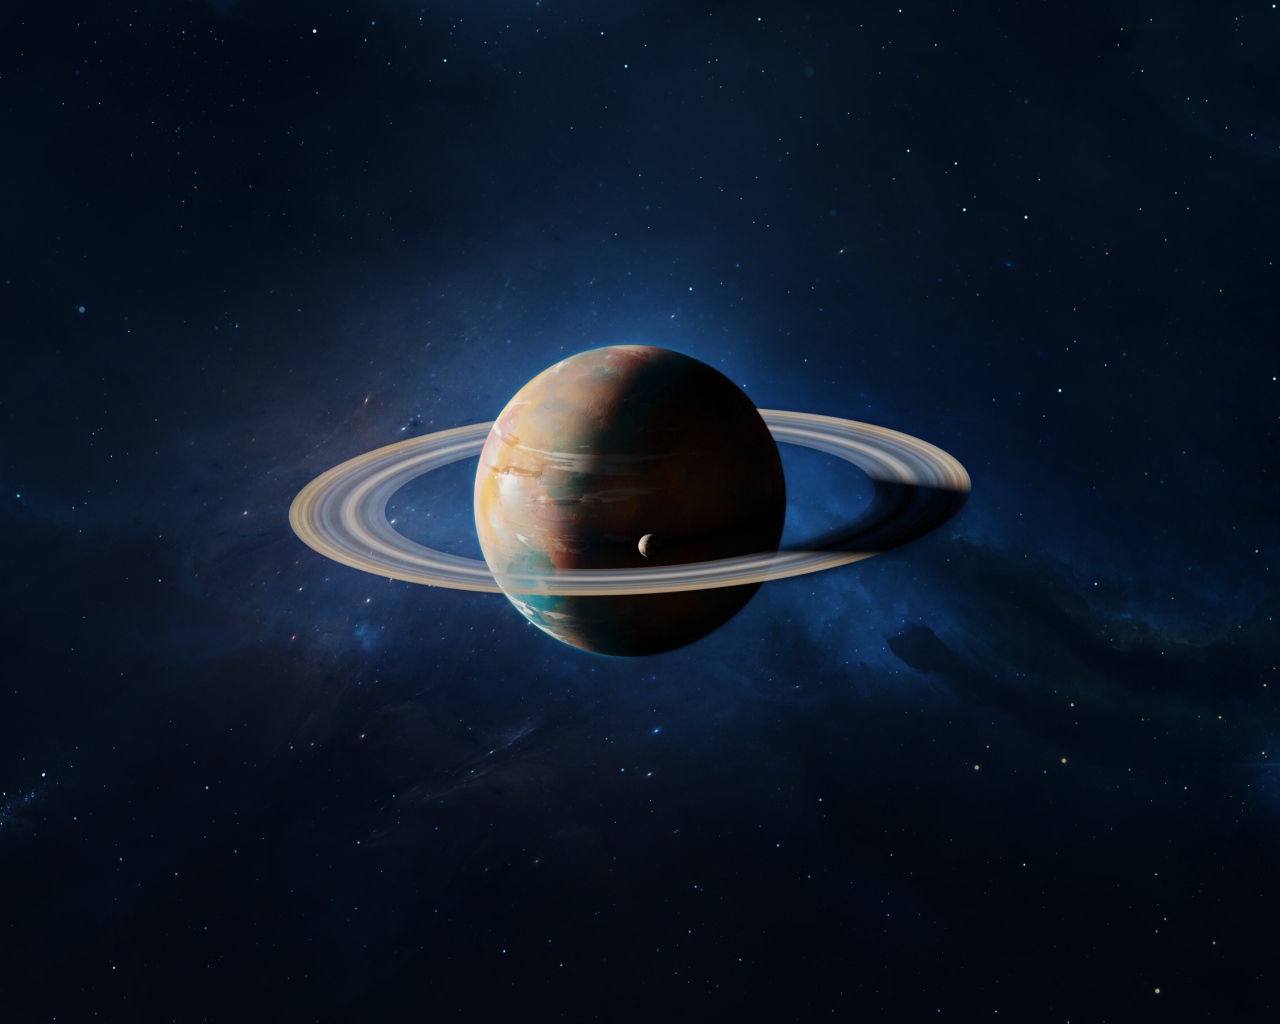 Большая планета Сатурн в голубом космосе 